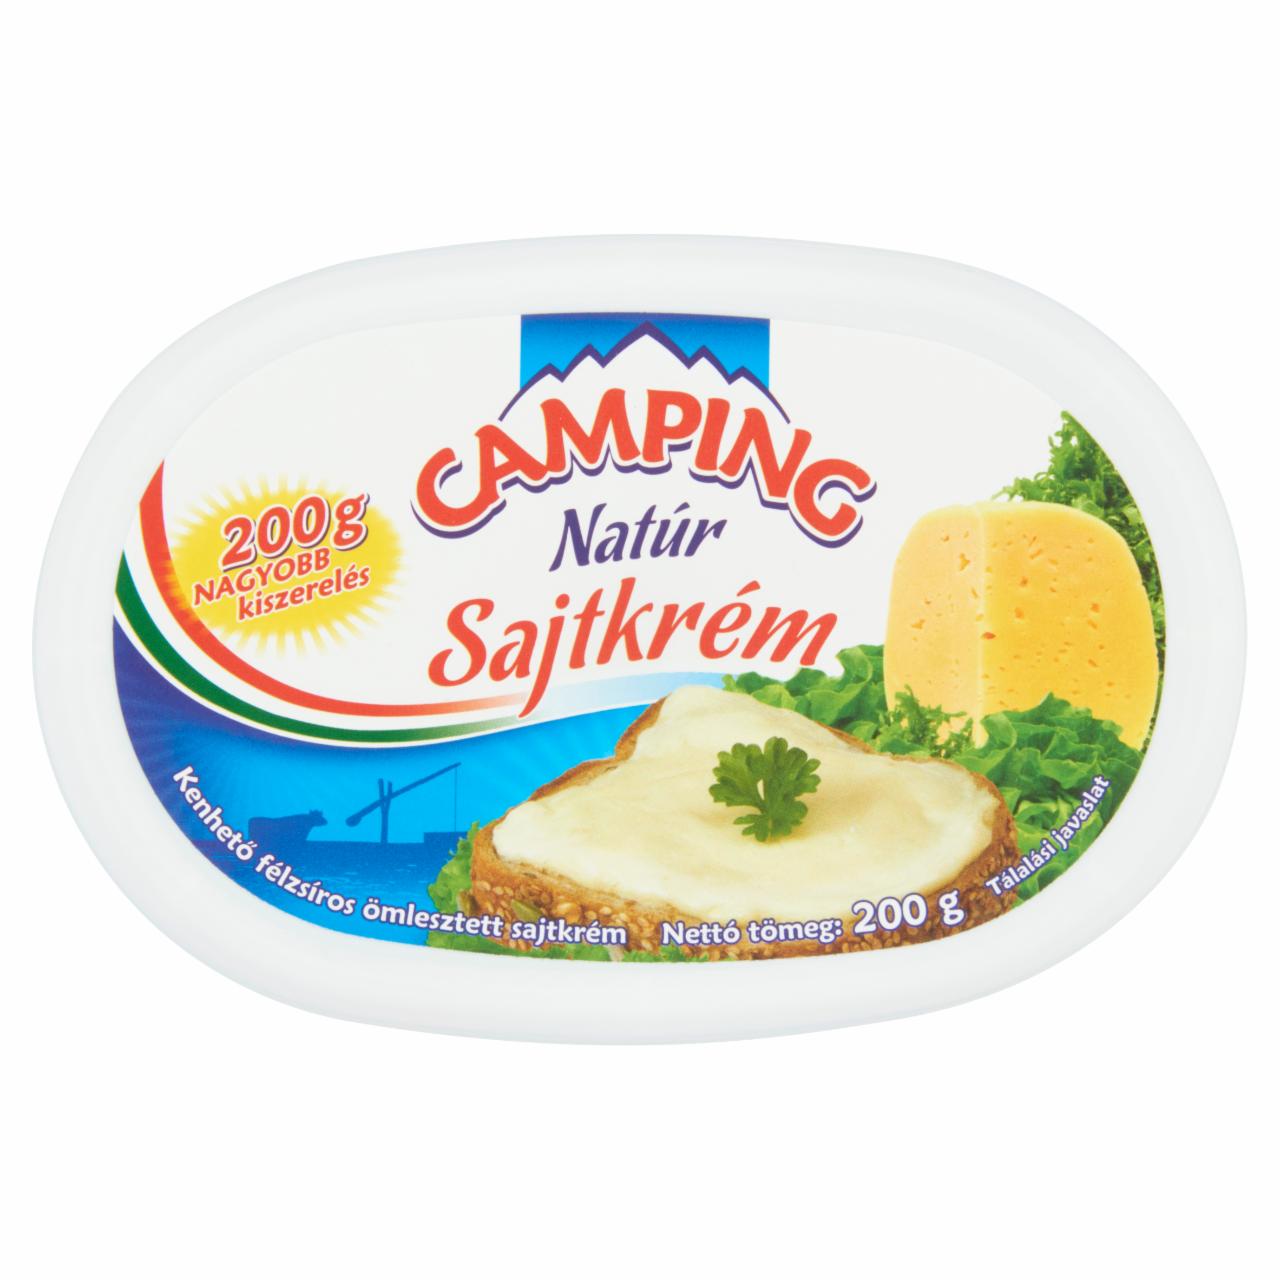 Képek - Camping natúr kenhető félzsíros ömlesztett sajtkrém 200 g